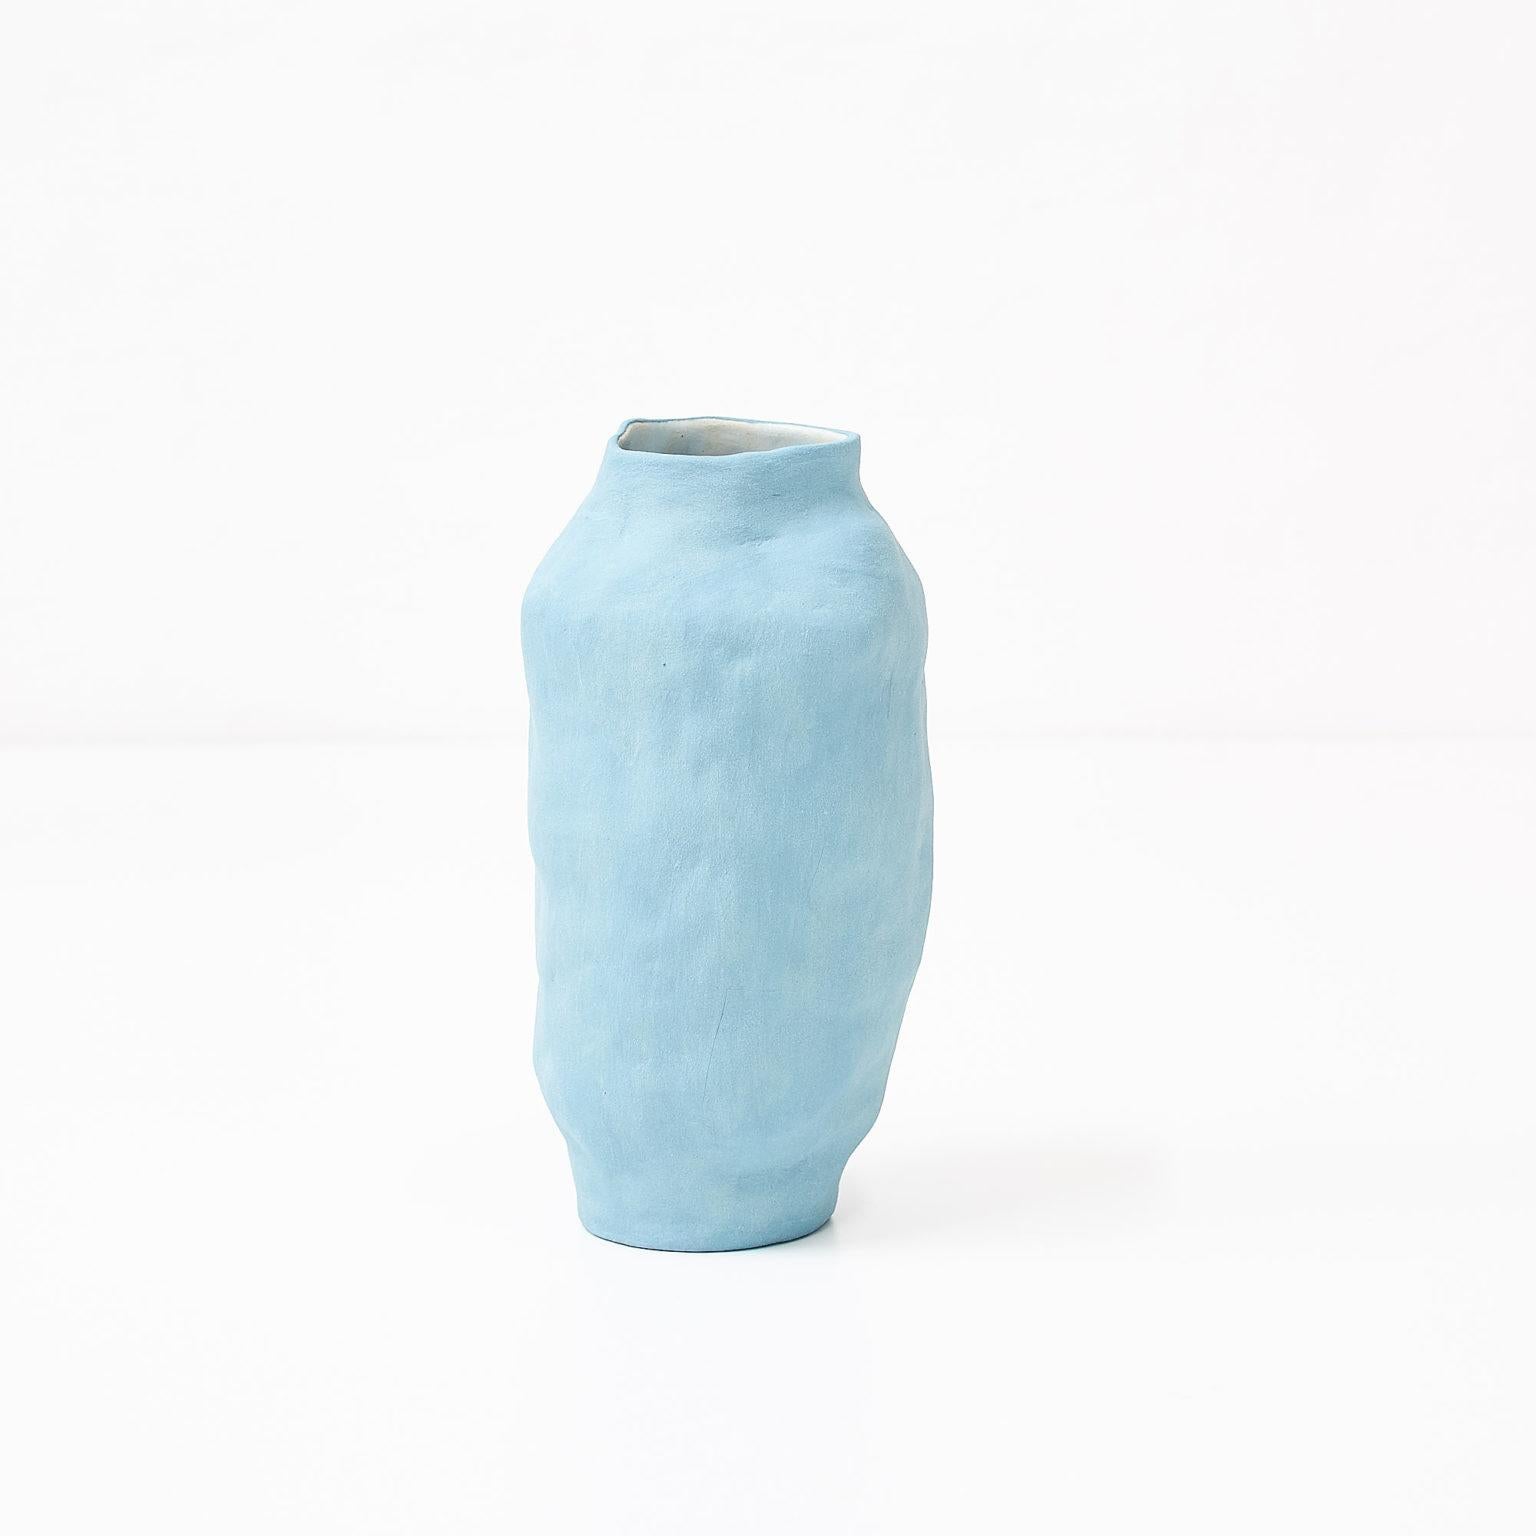 Vase bleu de Siup Studio
Dimensions : D15 x H28 cm
Matériaux : Céramique

Siup est un petit studio de design basé à Varsovie. Le concept a été créé par trois amis - Martyna Dymek, Marcin Sieczka et Kasia Skoczylas - qui se sont rencontrés à